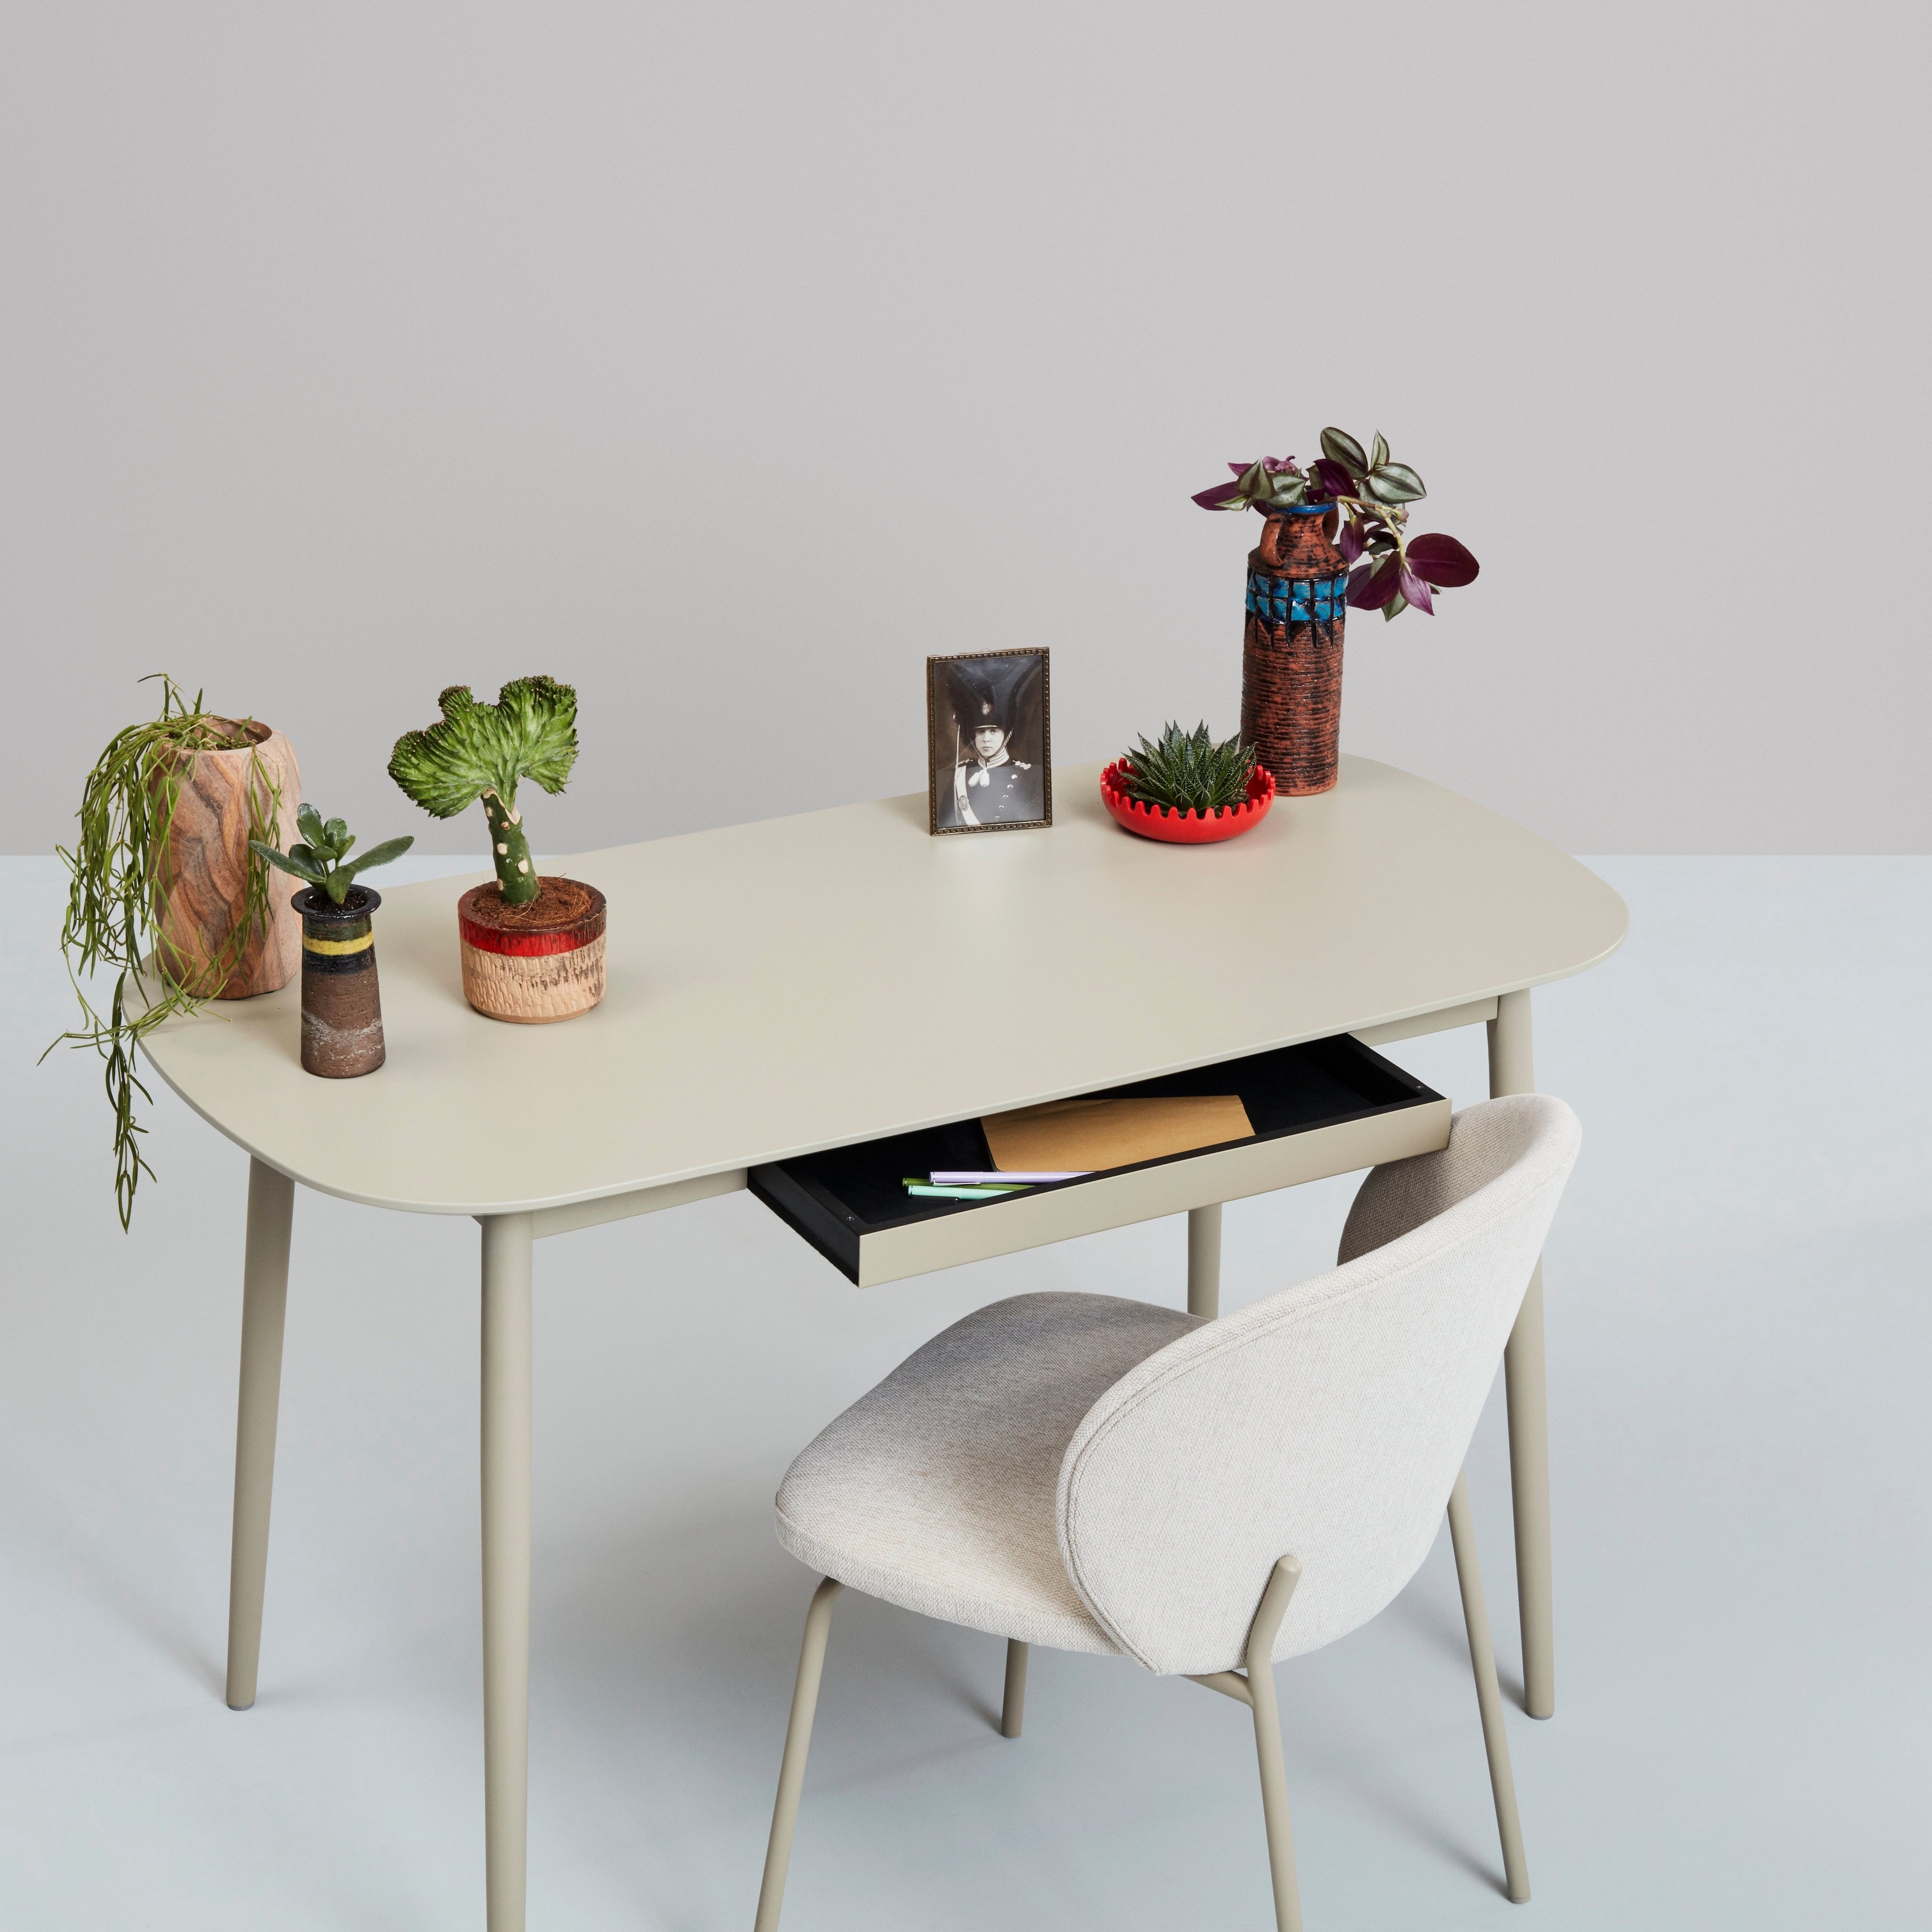 Белый стол с растениями, предметами декора и стулом на нейтральном фоне.